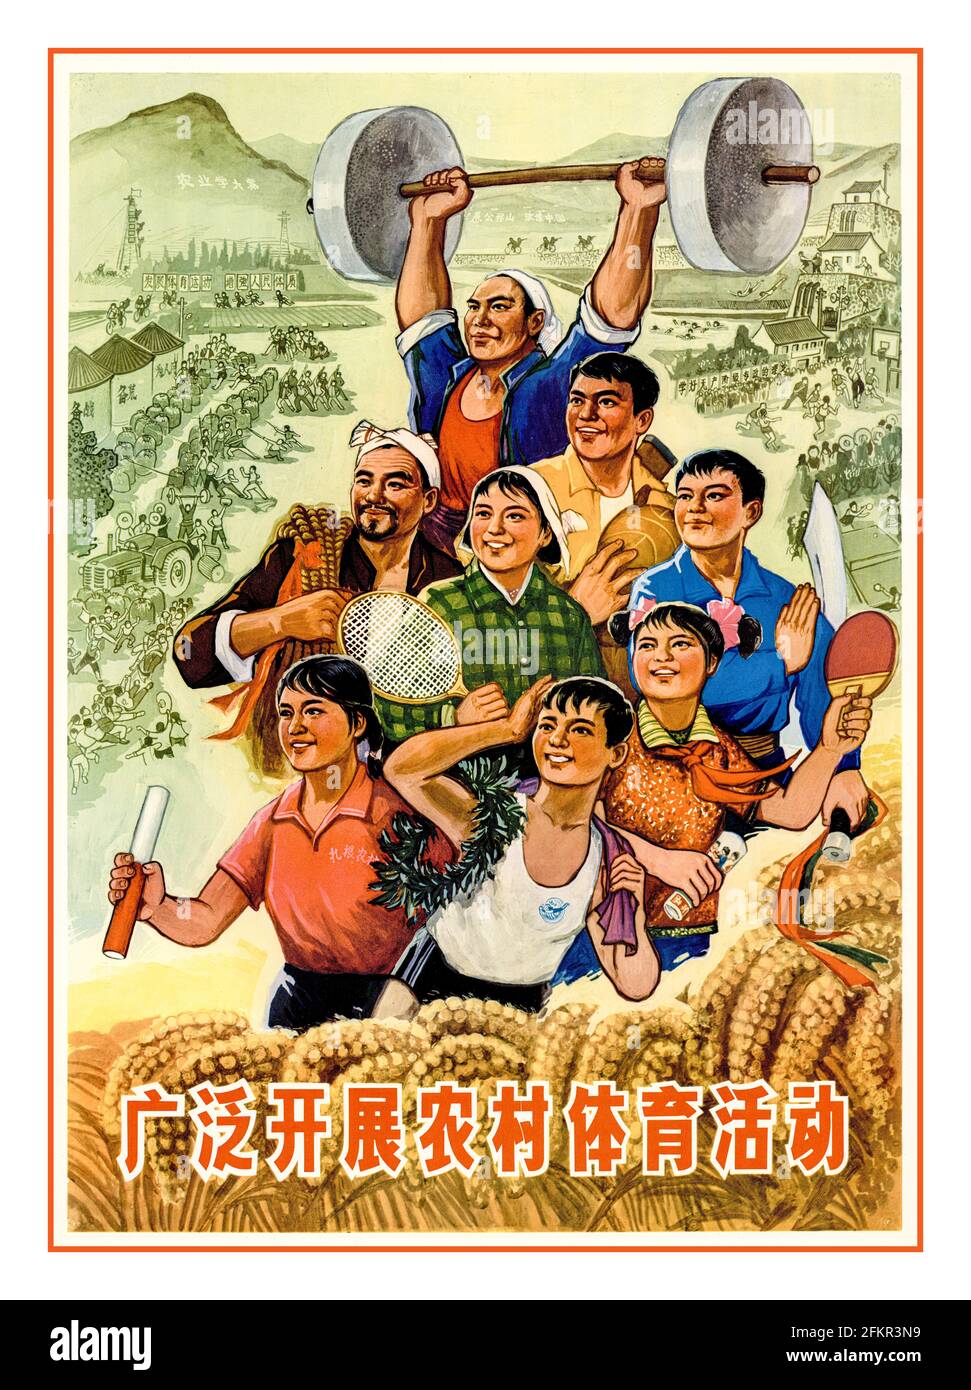 Vintage Chinese Propaganda Poster 1970 'Lasst uns verbreiten und entwickeln Sport in ländlichen Gebieten“ Zhao Kunhan Poster 1975 unter dem Vorsitzenden Der Kommunistischen Partei Chinas – Mao Zedong Stockfoto